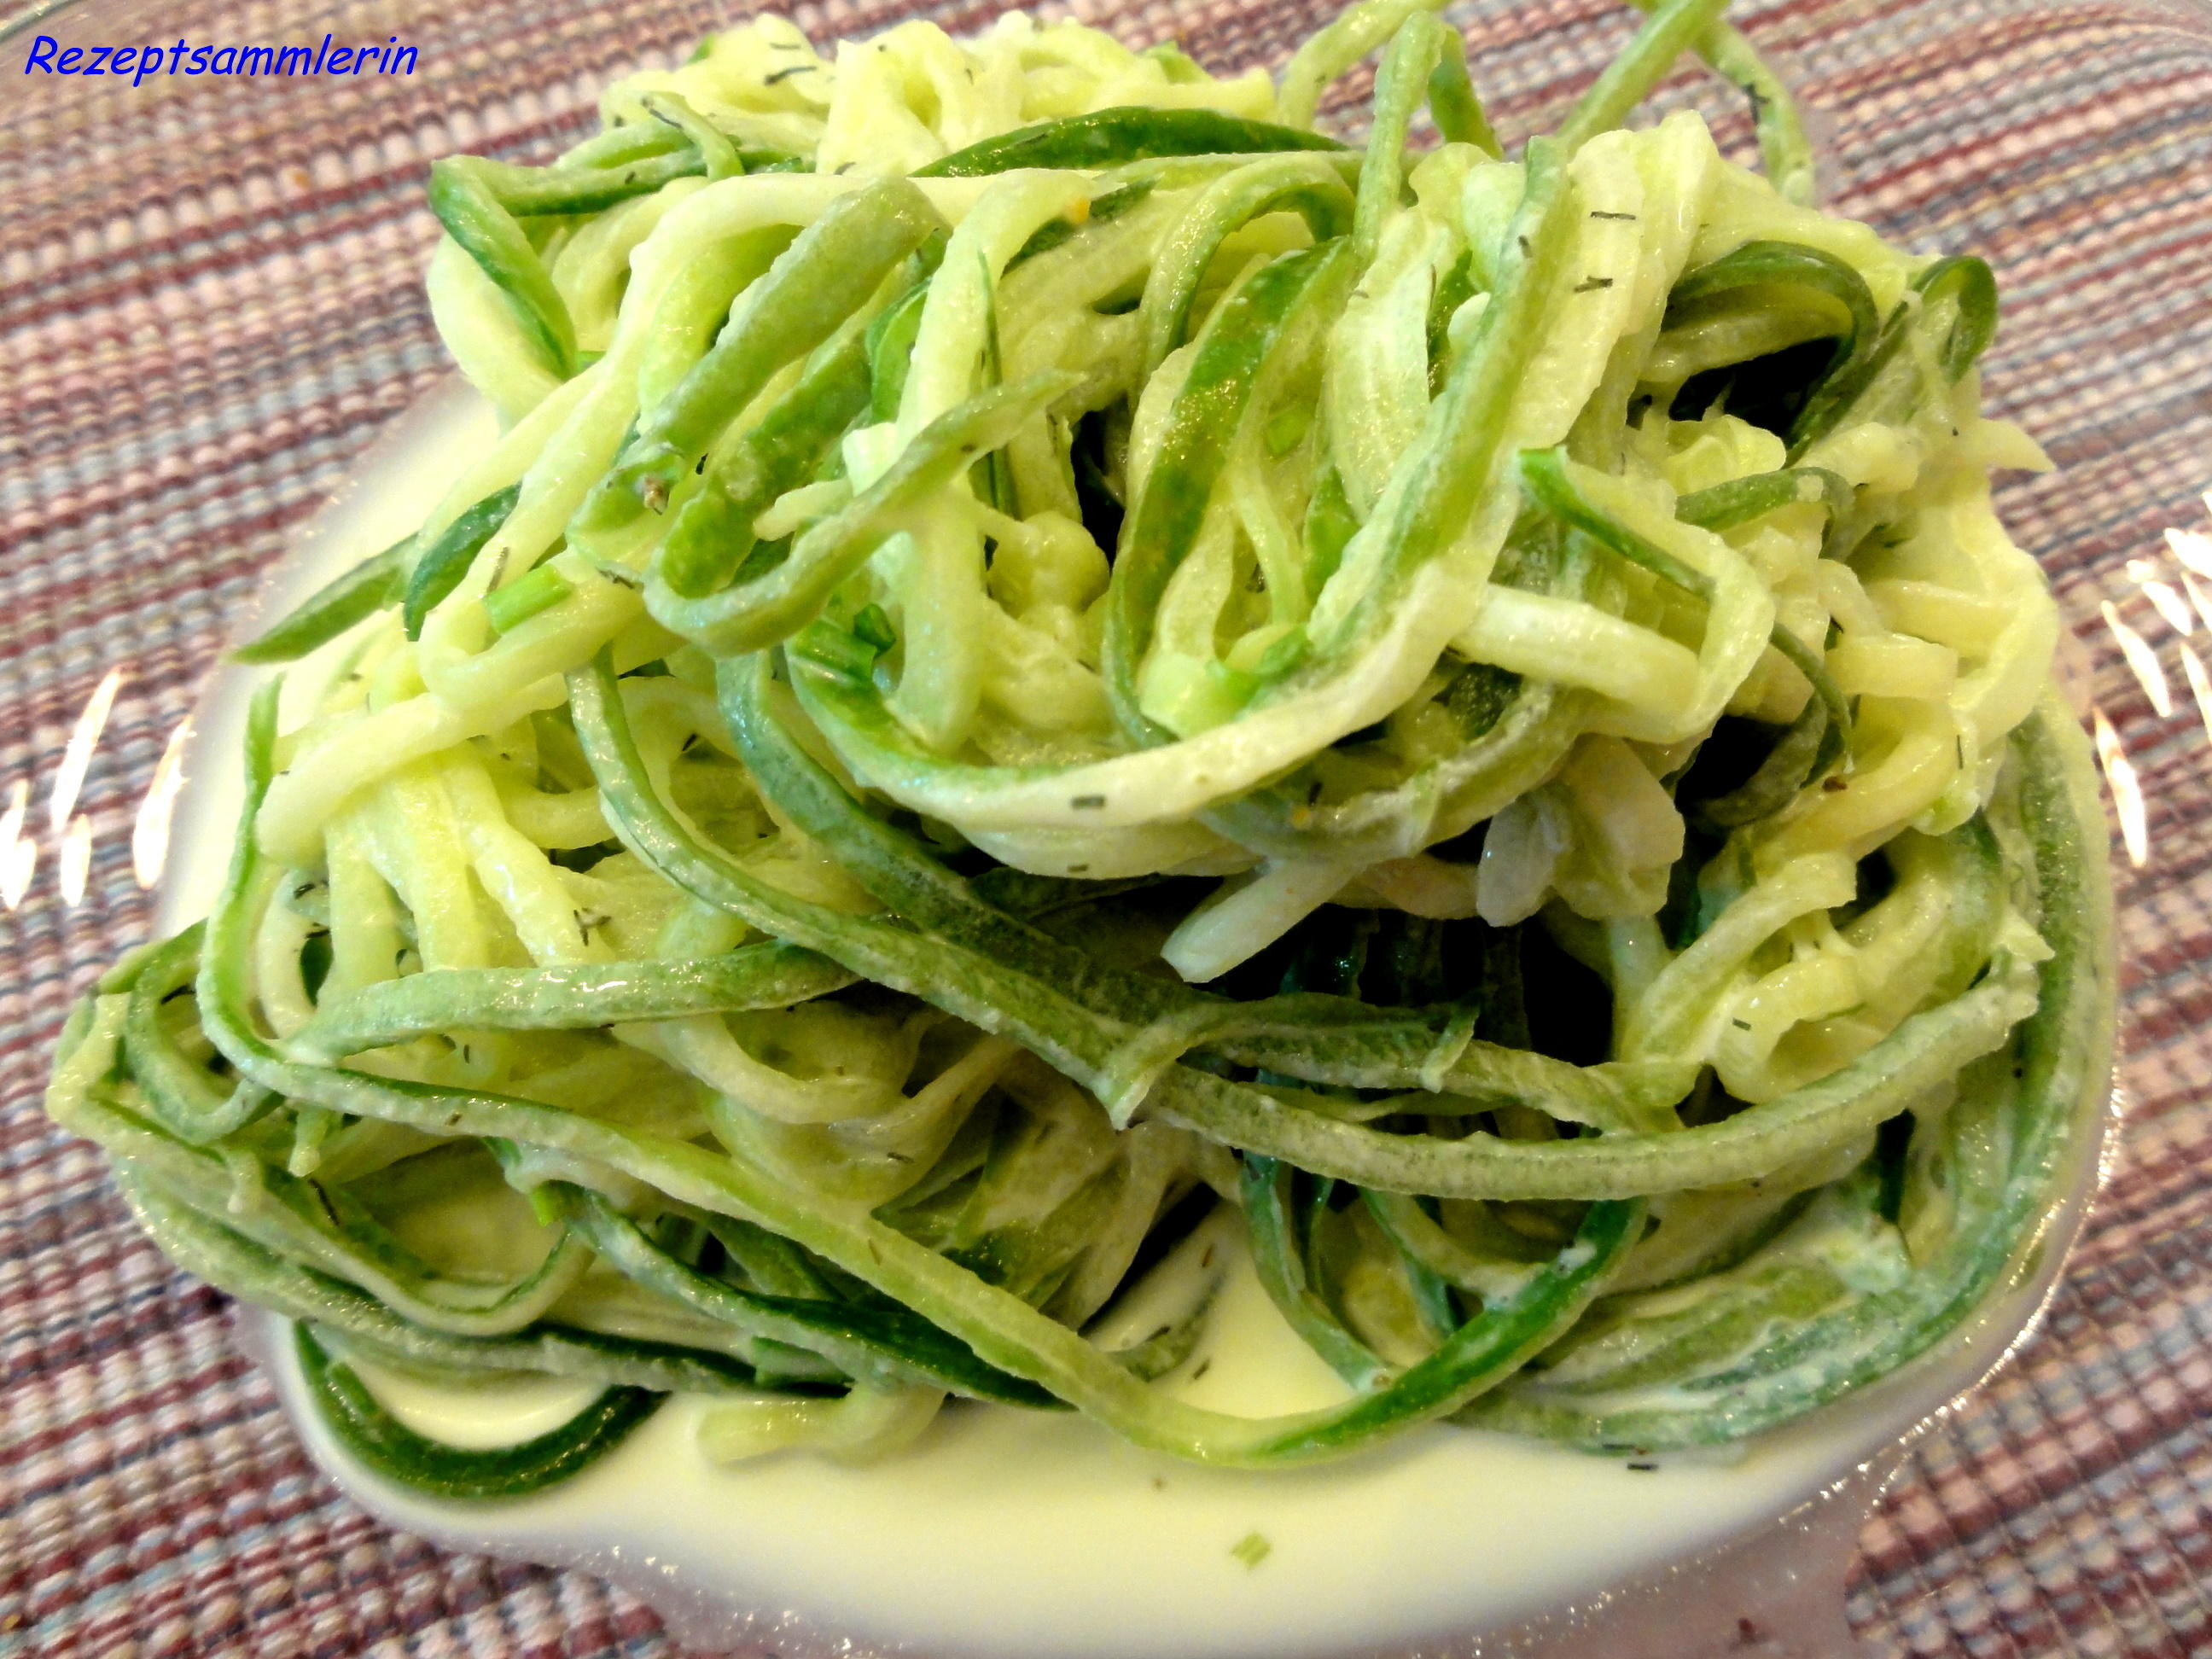 Salatbar: SALATGURKE tritt als Spaghetti auf :-) - Rezept By
Rezeptsammlerin